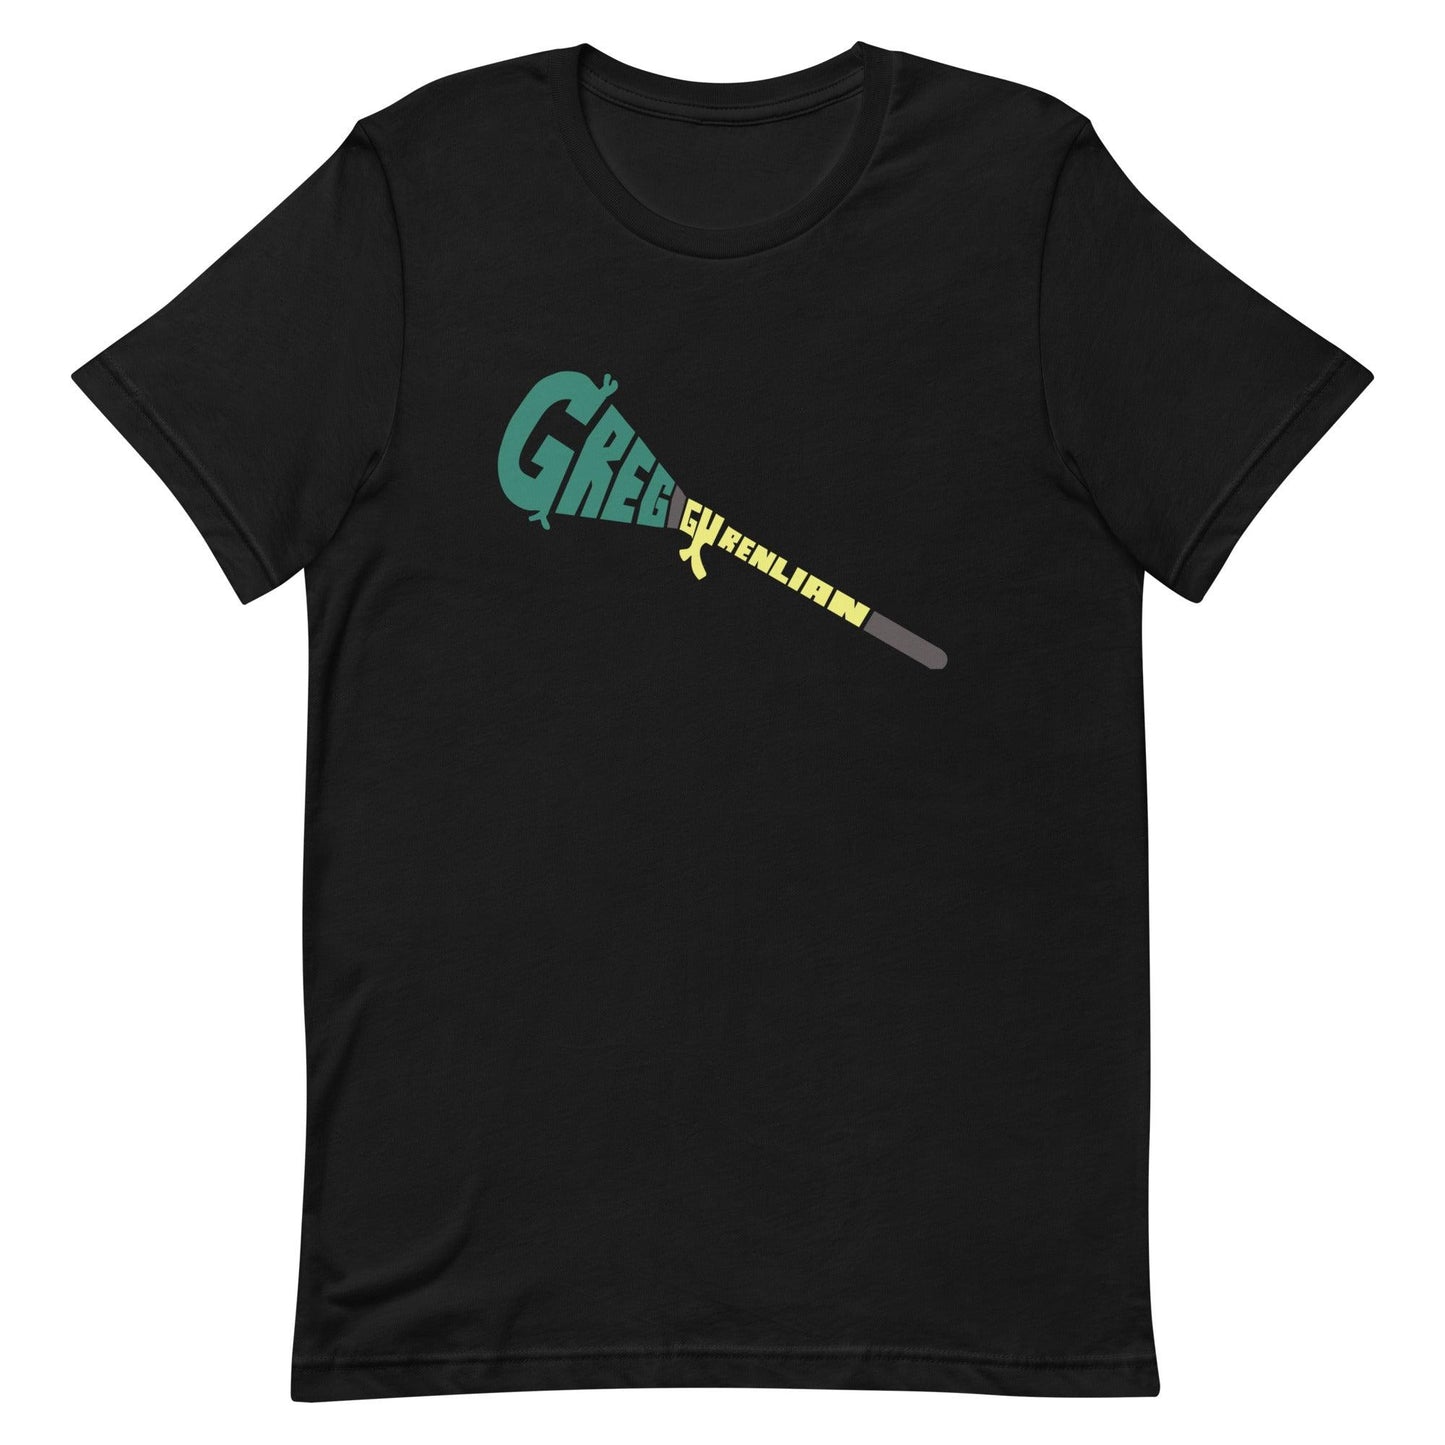 Greg Gurenlian "Essential" t-shirt - Fan Arch